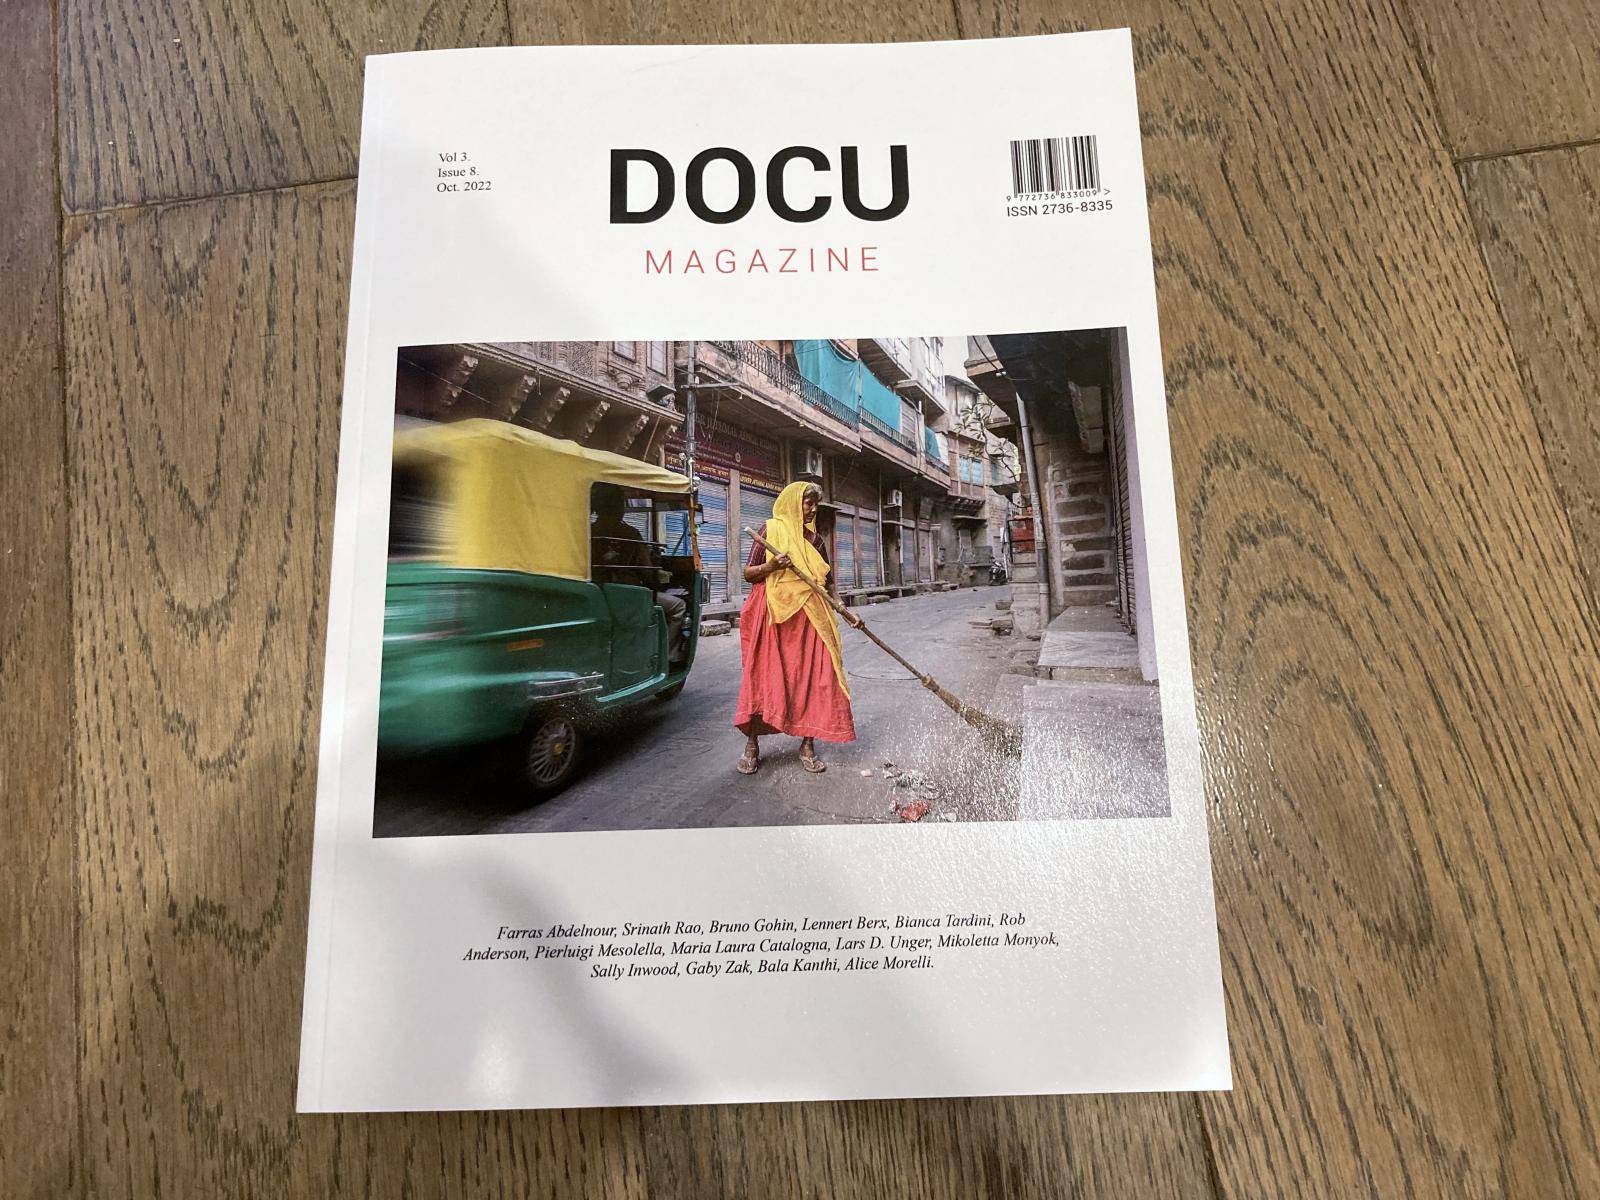 Work published in Docu Magazine